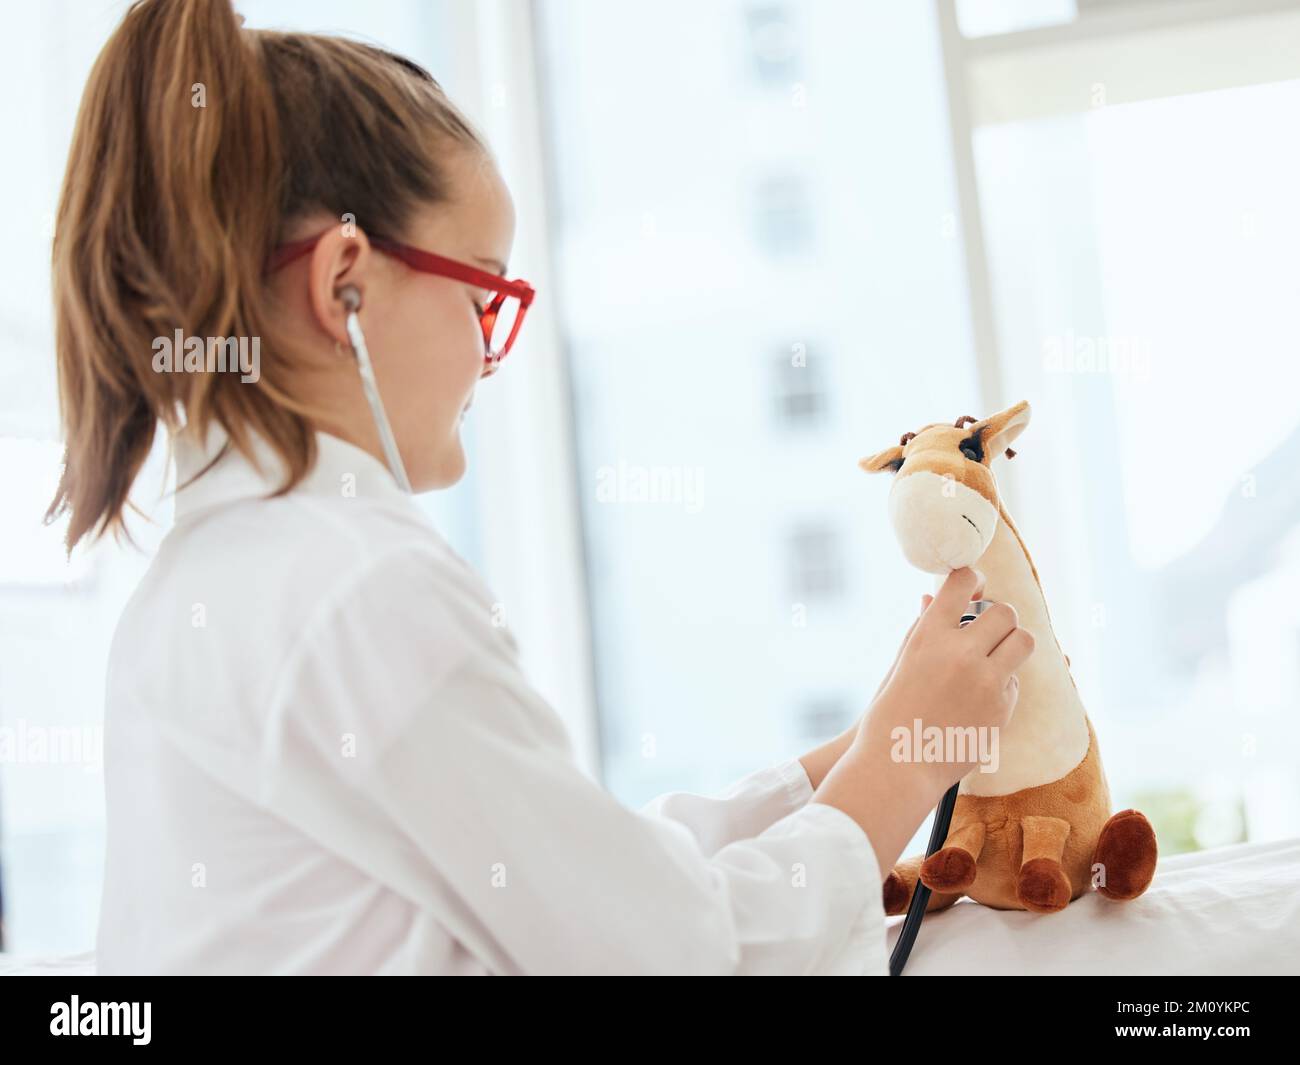 Avete bisogno anche del vostro controllo annuale. una bambina che finge di essere un medico mentre esamina il suo animale farcito a casa. Foto Stock